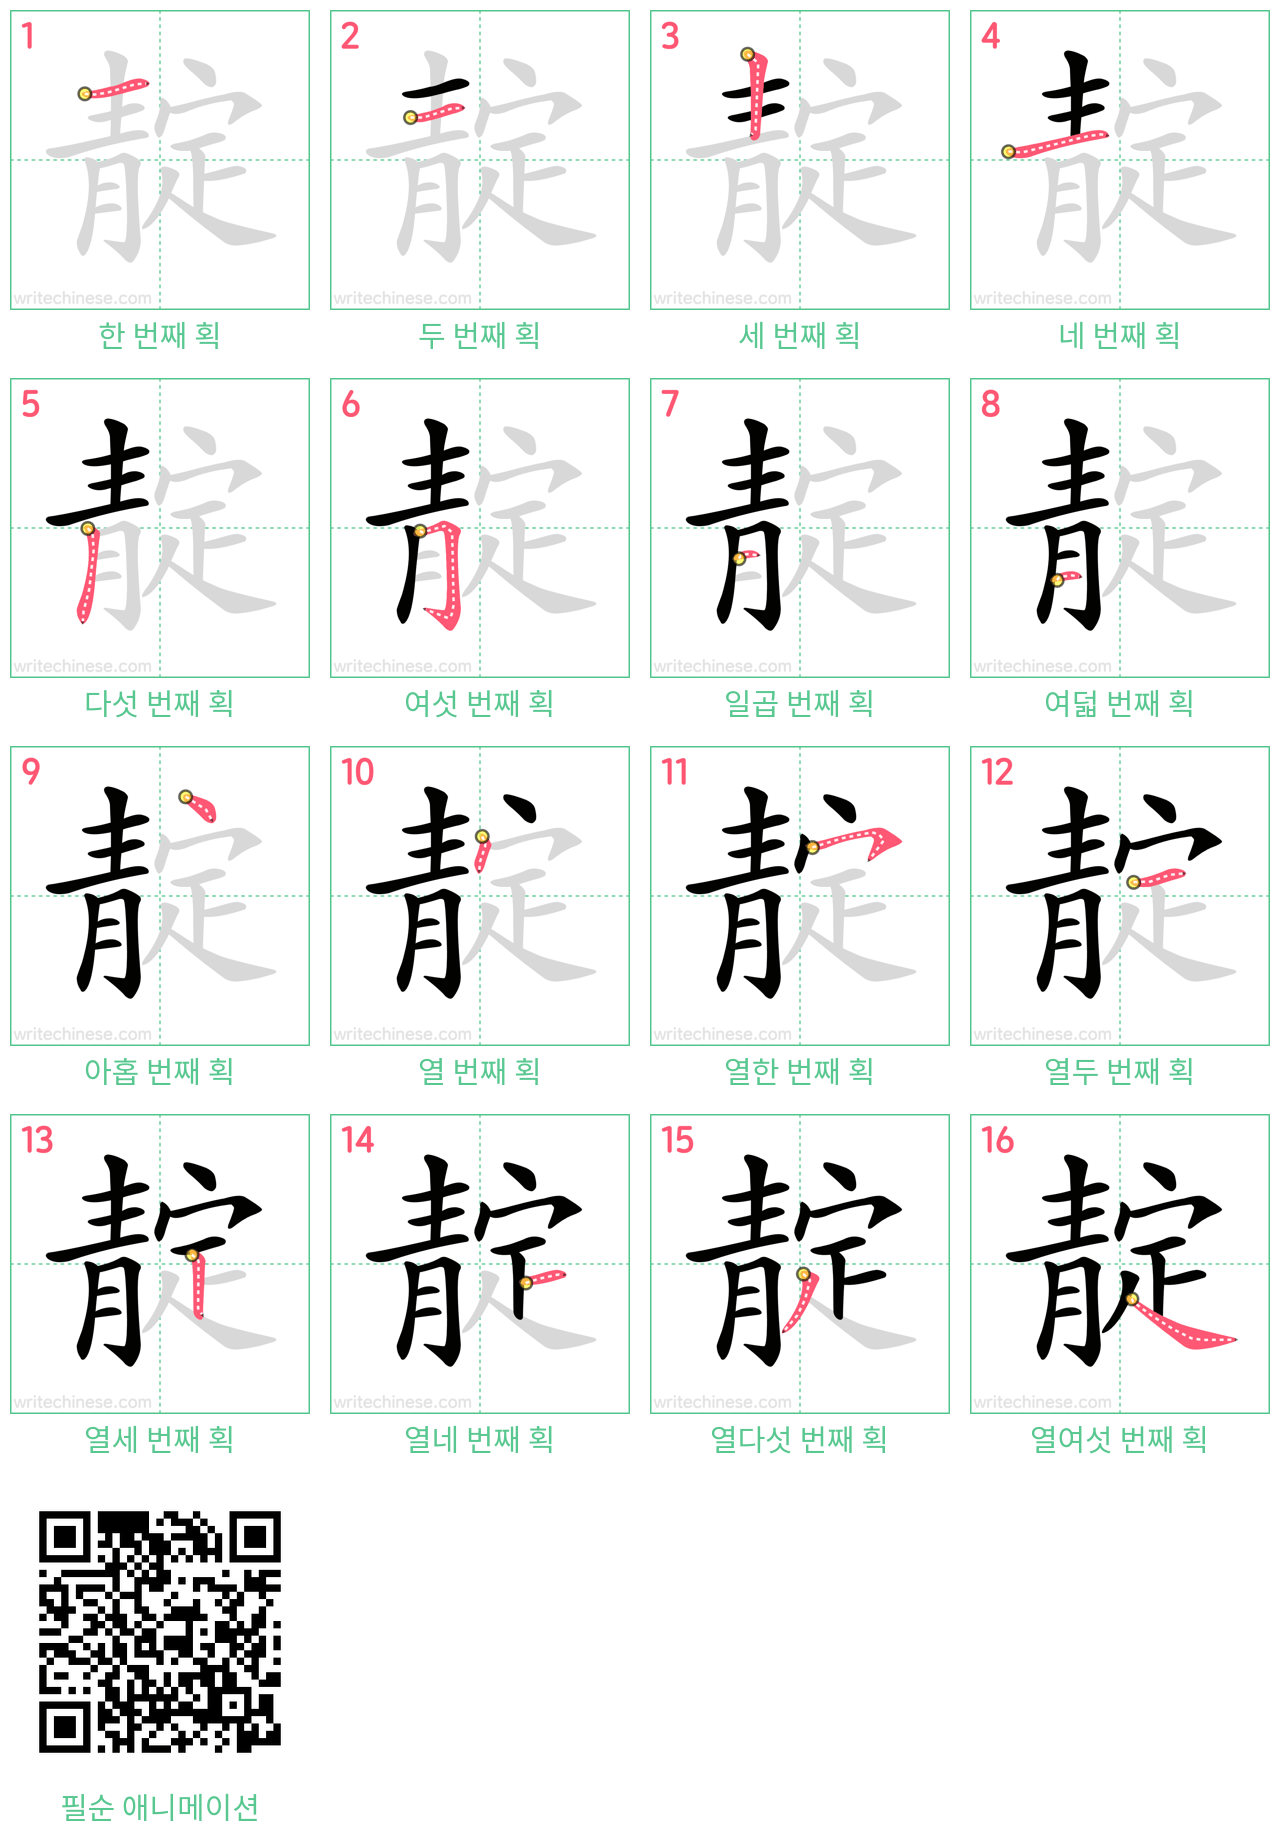 靛 step-by-step stroke order diagrams